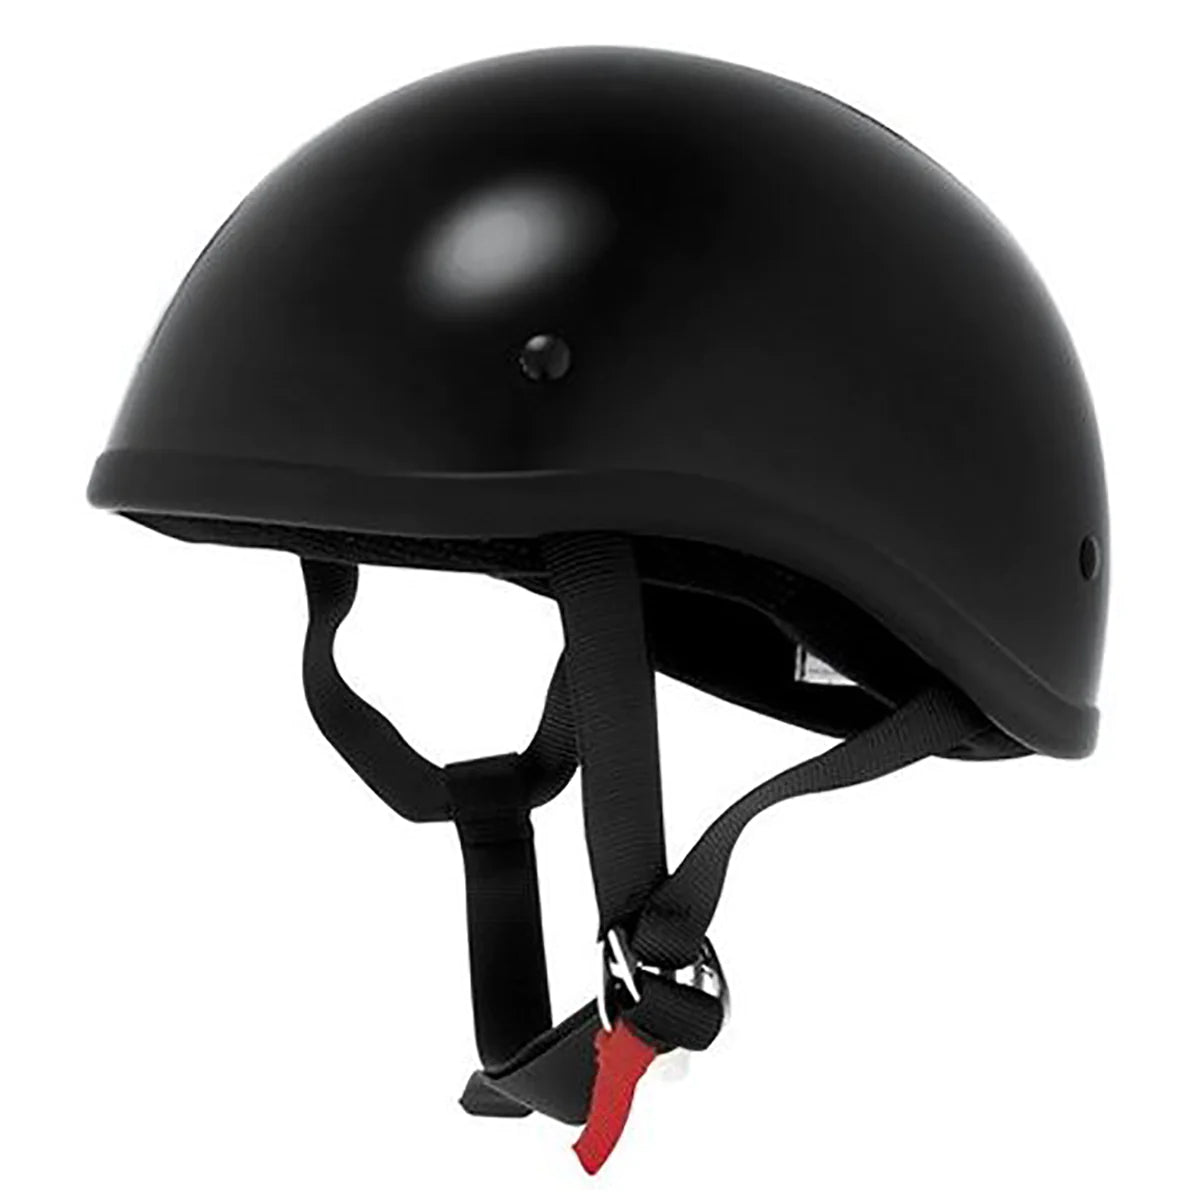 Skid Lid Original Adult Cruiser Helmets